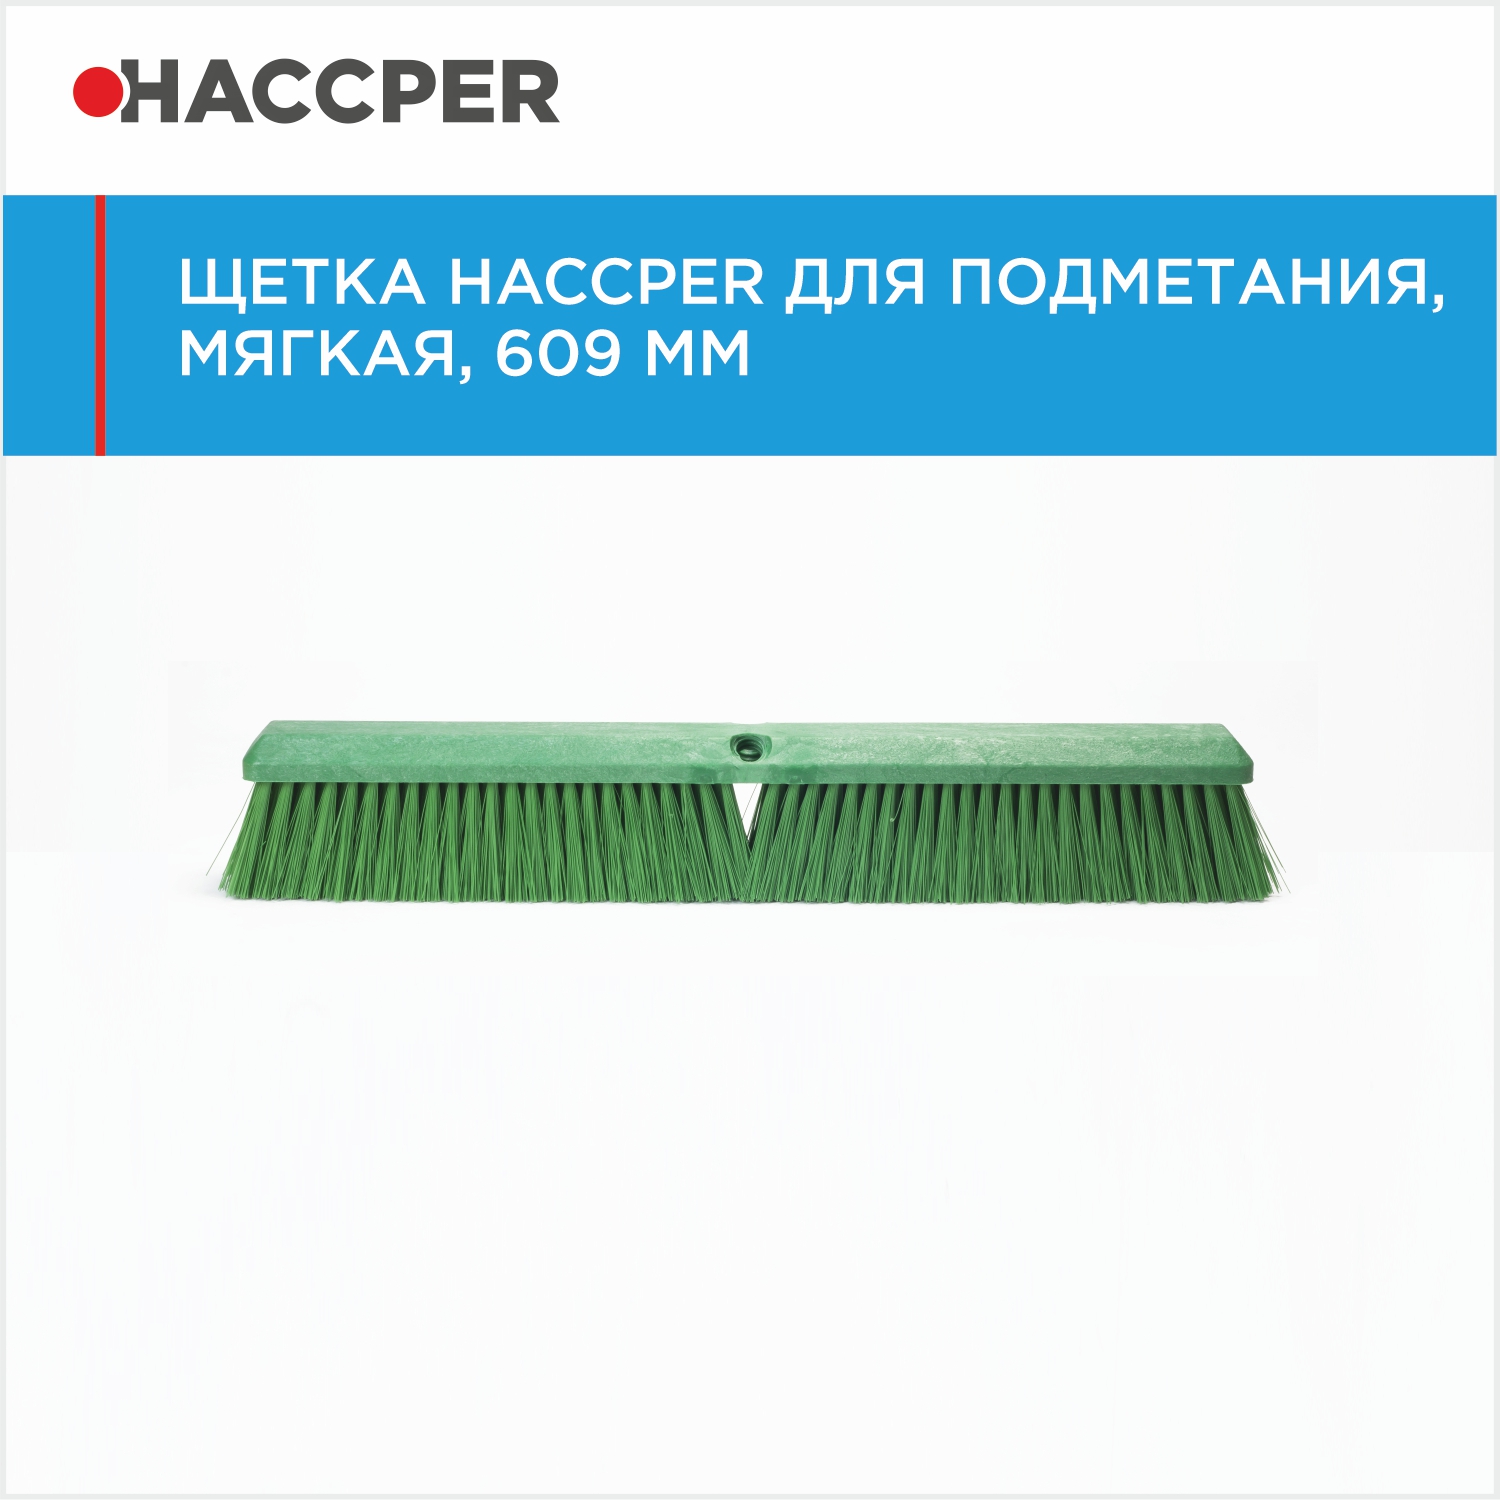 Щетка HACCPER для подметания, мягкая, 609 мм, зеленая